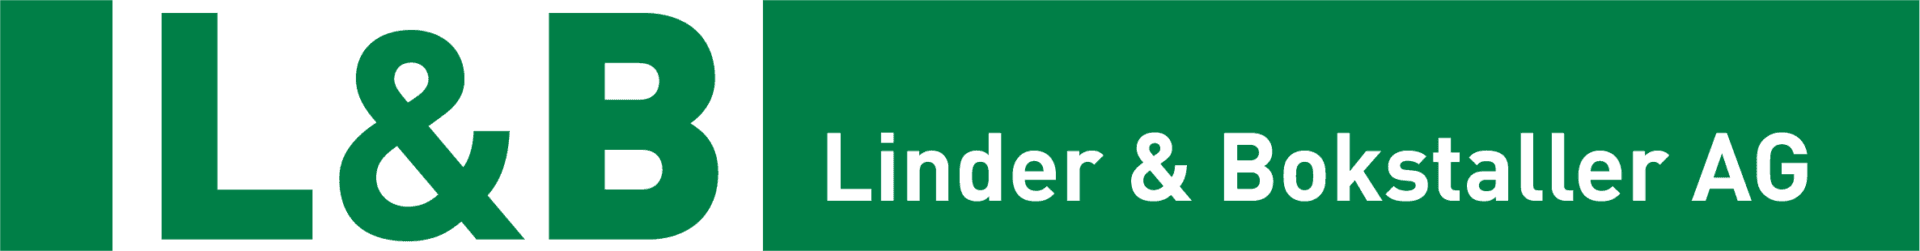 Linder & Bokstaller AG